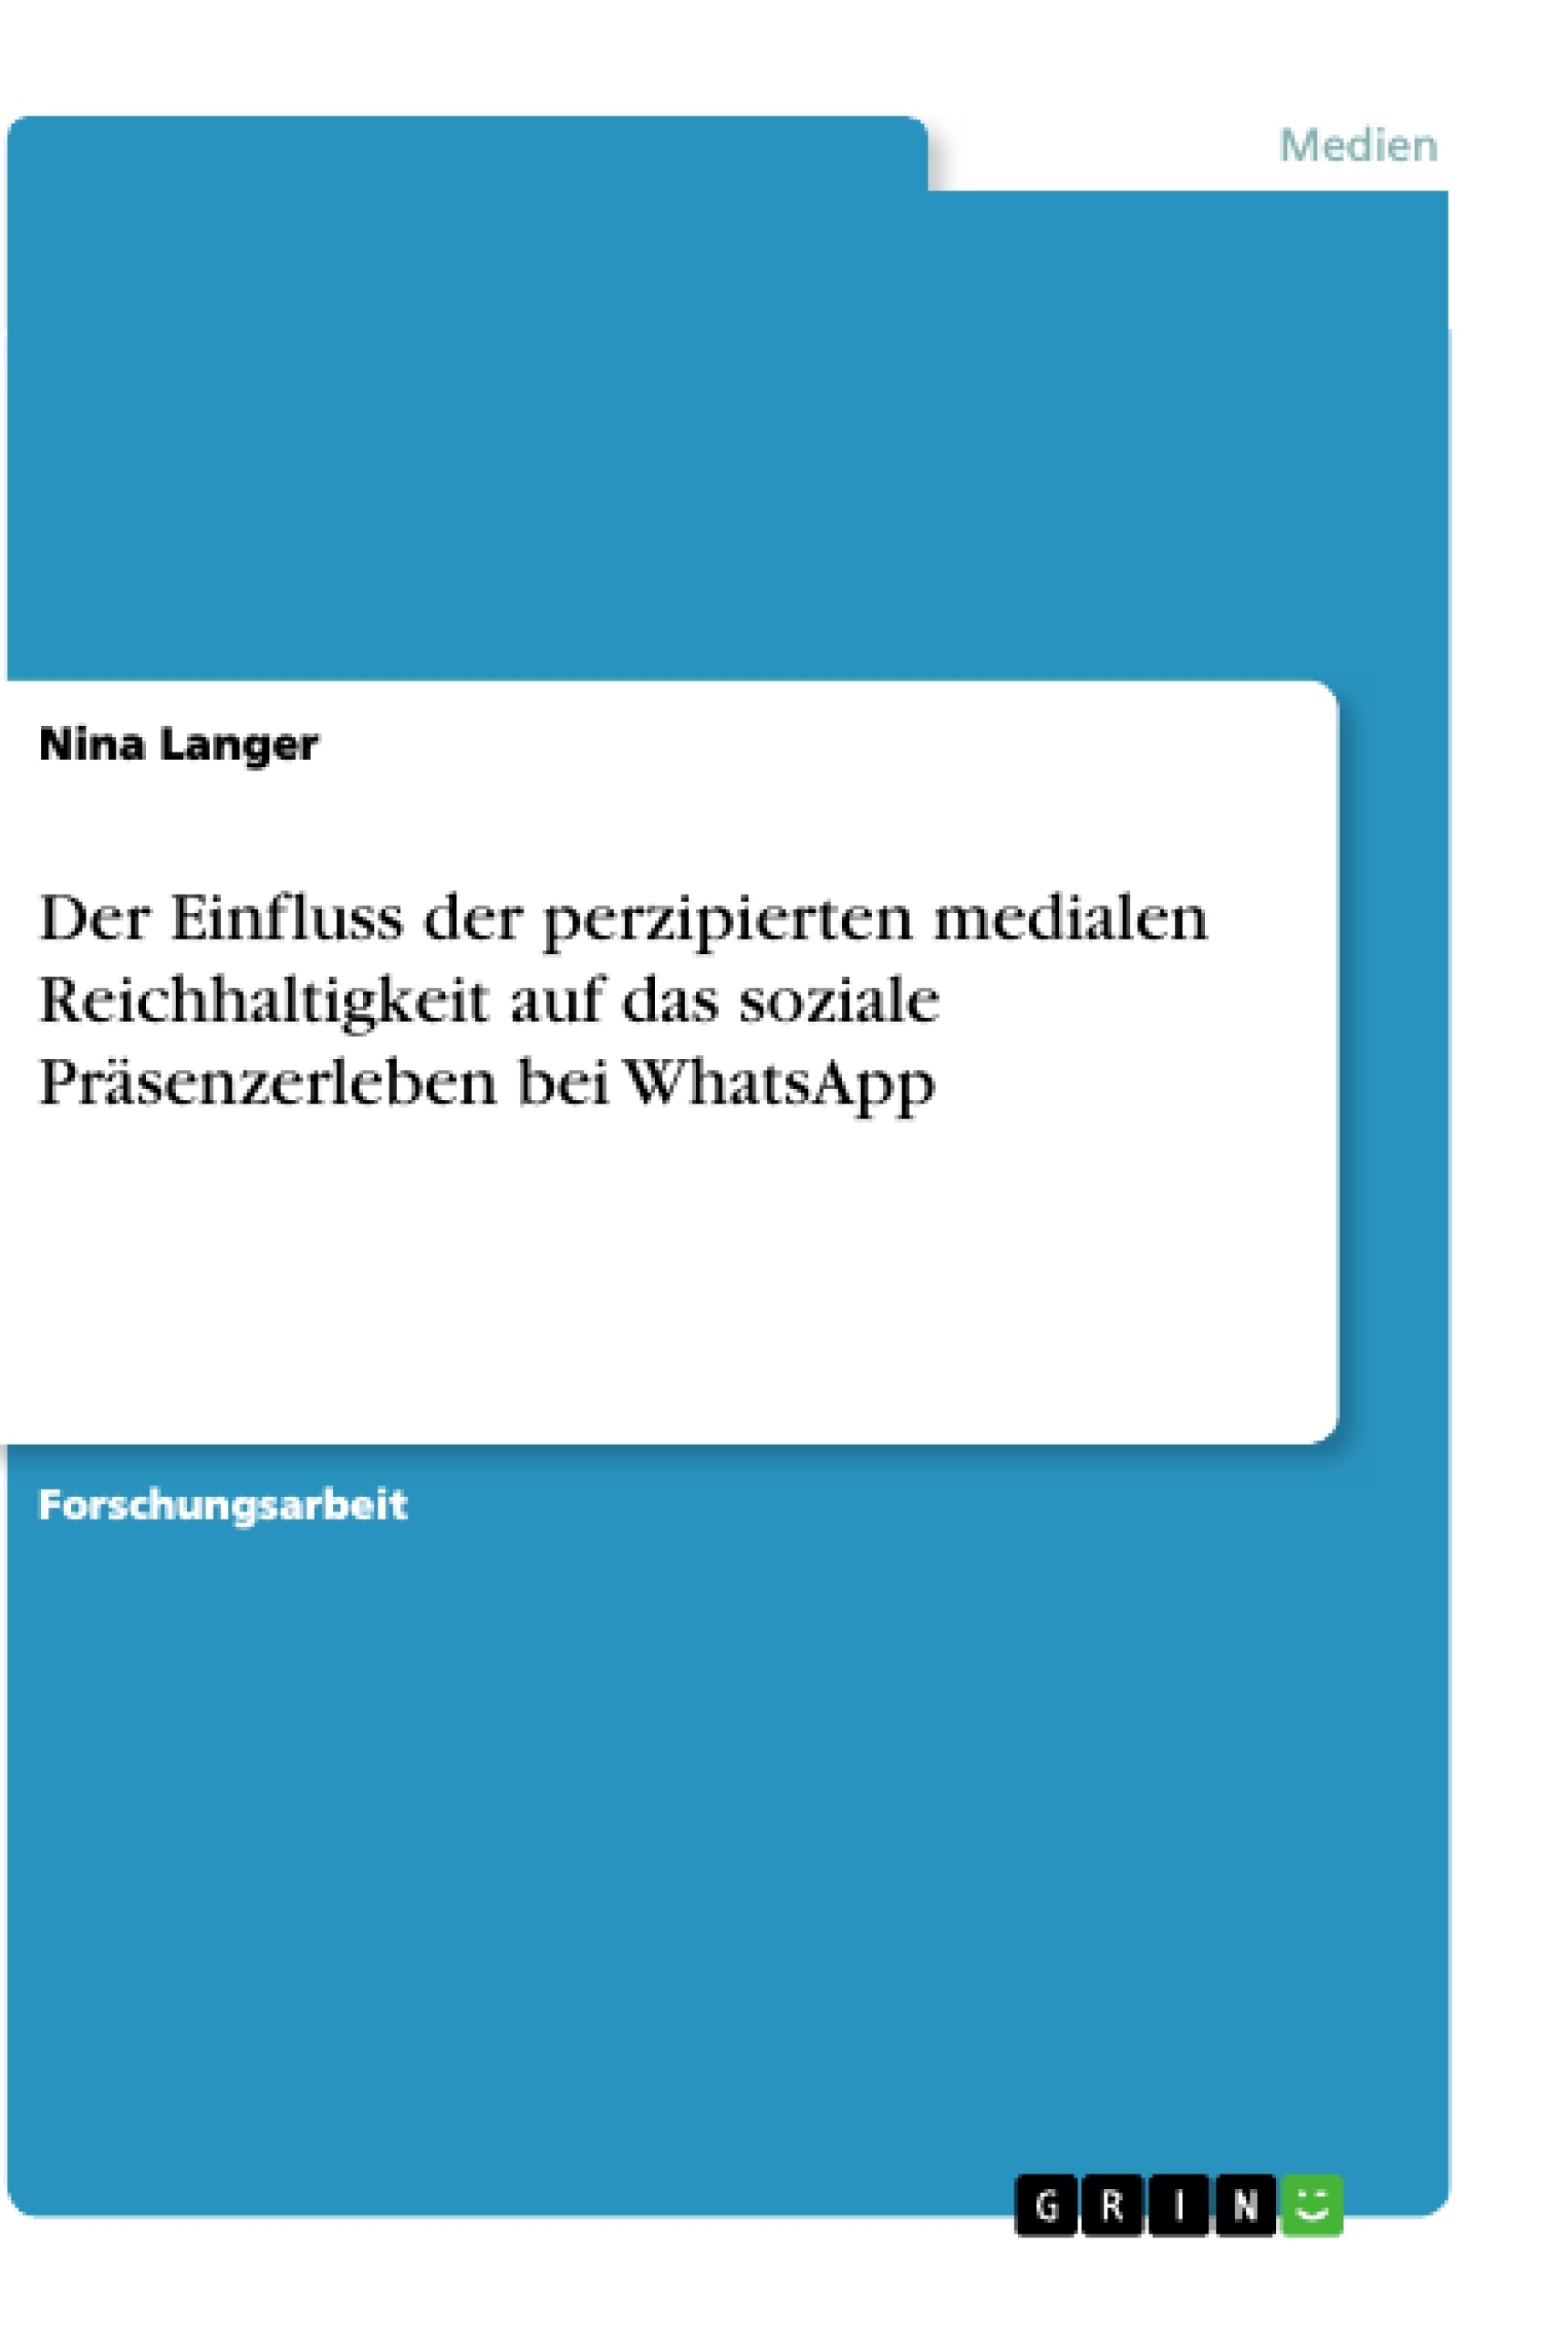 Título: Der Einfluss der perzipierten medialen Reichhaltigkeit auf das soziale Präsenzerleben bei WhatsApp